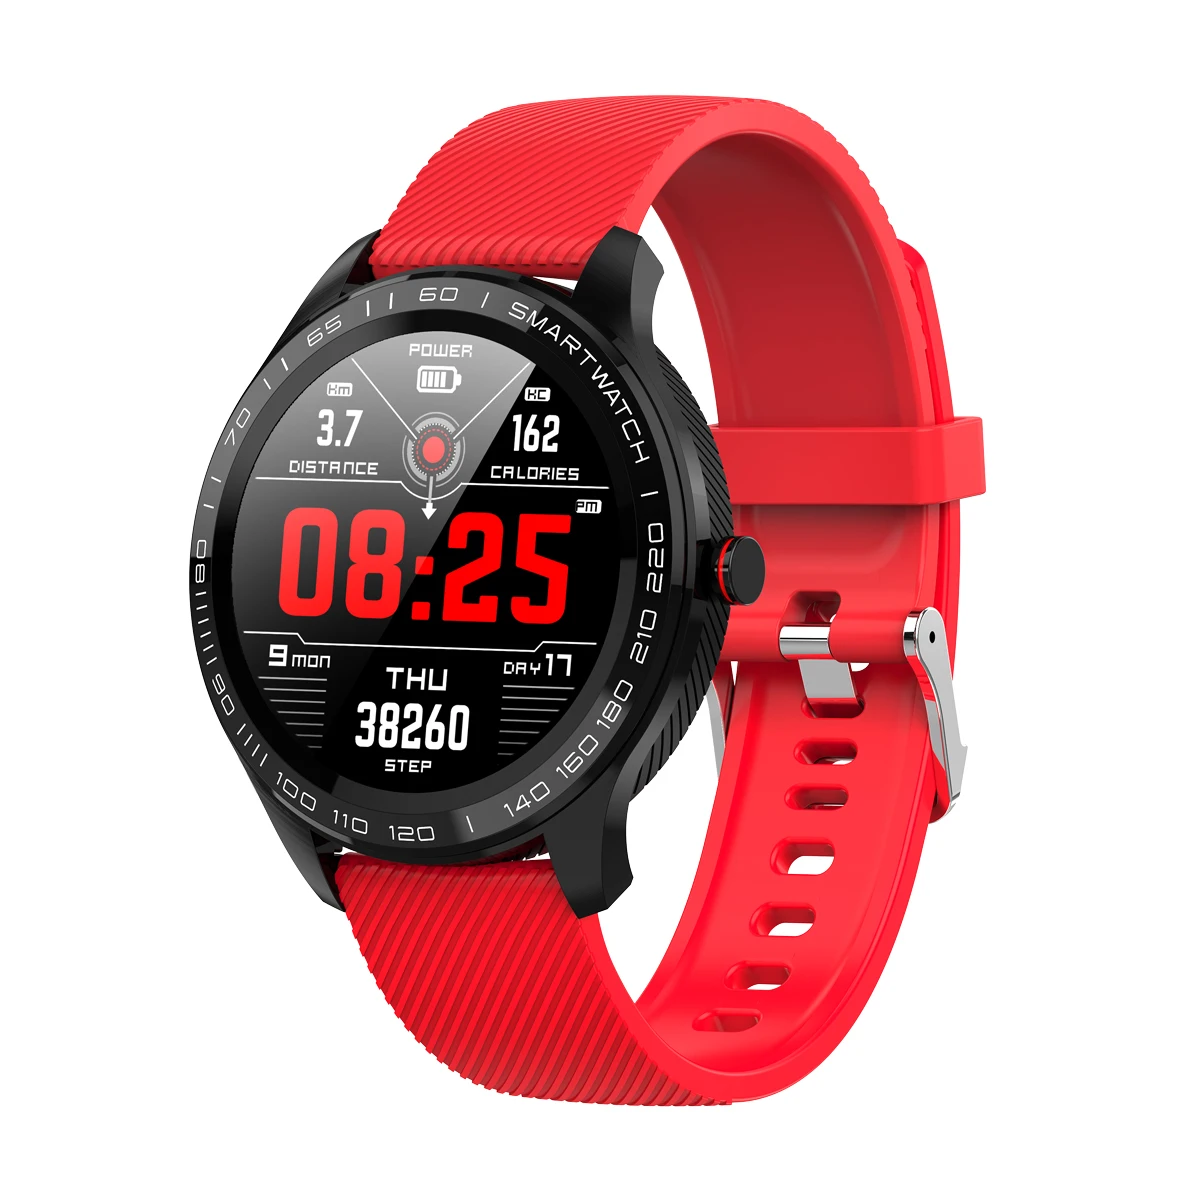 YOCUBY L9 Смарт-часы мужские ECG PPG HRV отчет сердечного ритма спальный монитор IP68 водонепроницаемый шаг фитнес-трекер спортивные часы PK L7 - Цвет: red silicon